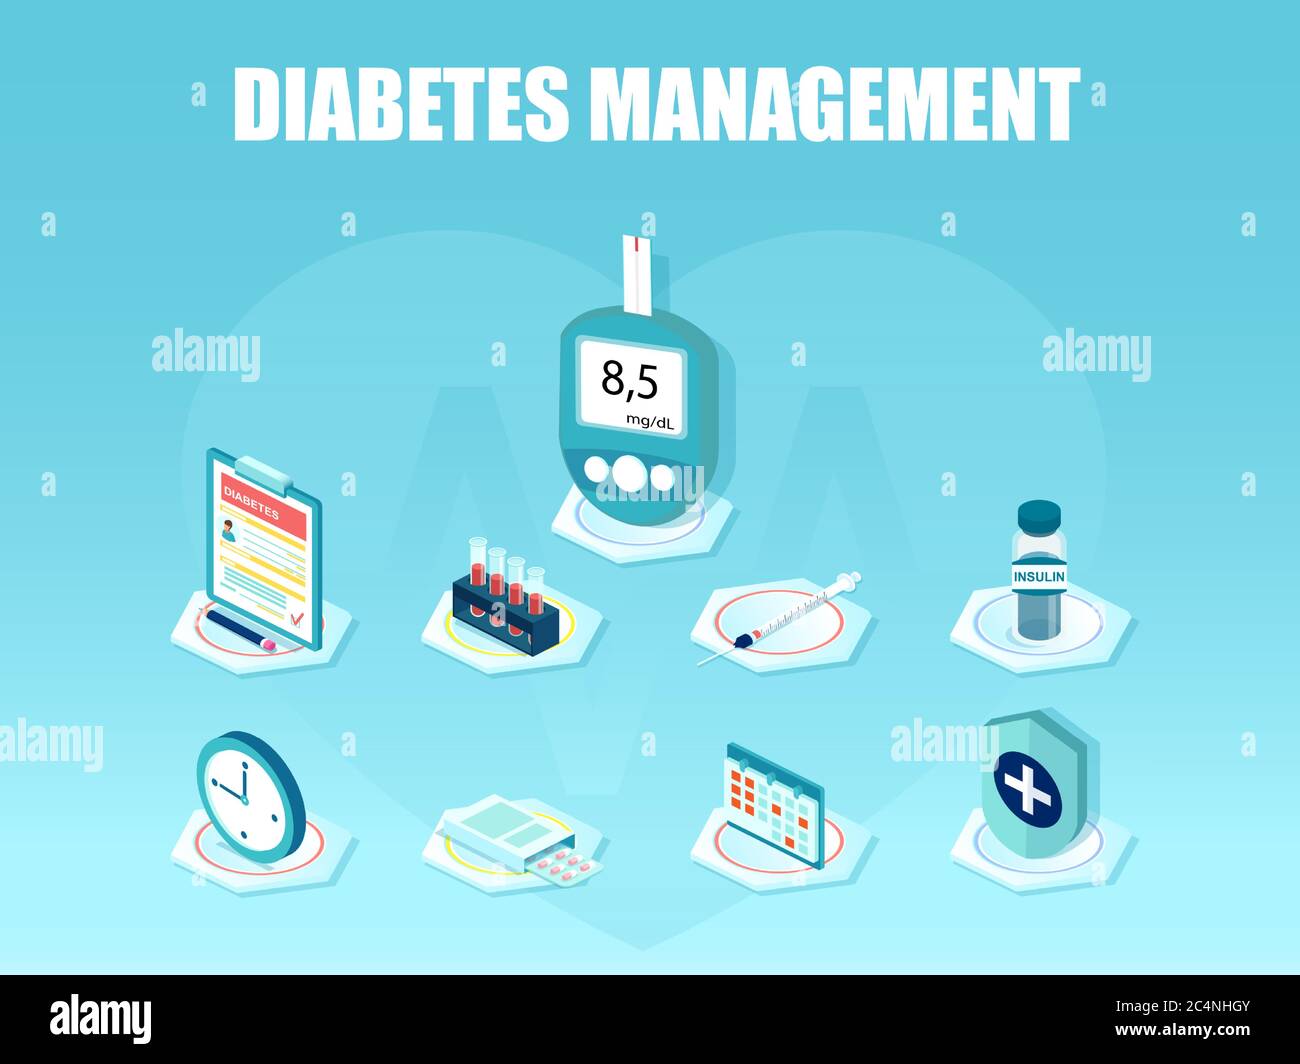 Symbole für Diabetesmanagement und Diagnose eingestellt. Vektor von Blutzuckermessgerät, Pillen, Spritze, Insulinfläschchen, Patienten-ID-Karte Versicherung Stock Vektor